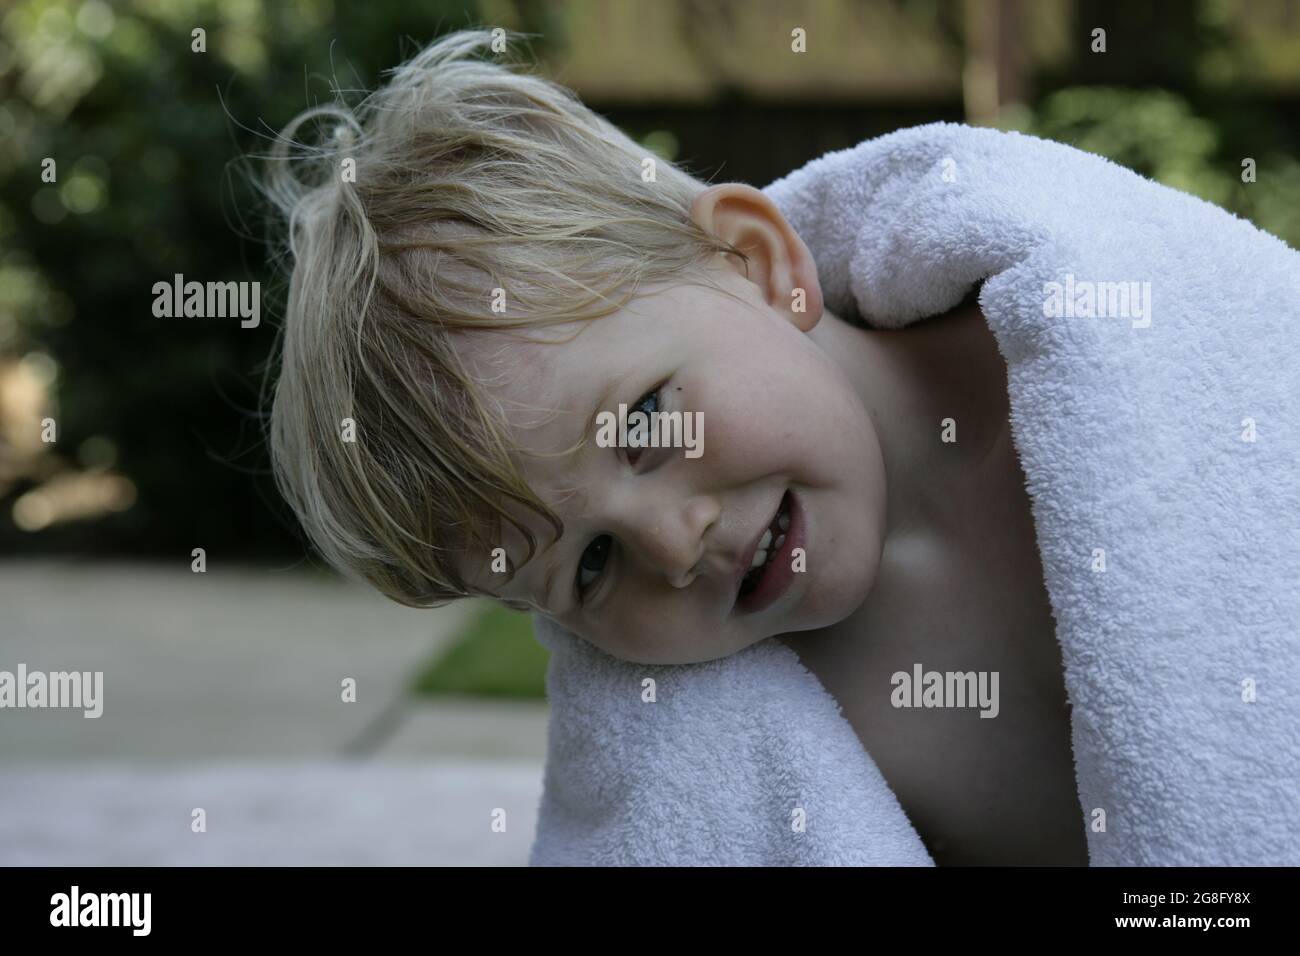 Jardin d'été extérieur portrait d'un jeune enfant avec cheveux blonds enveloppés d'une serviette Banque D'Images